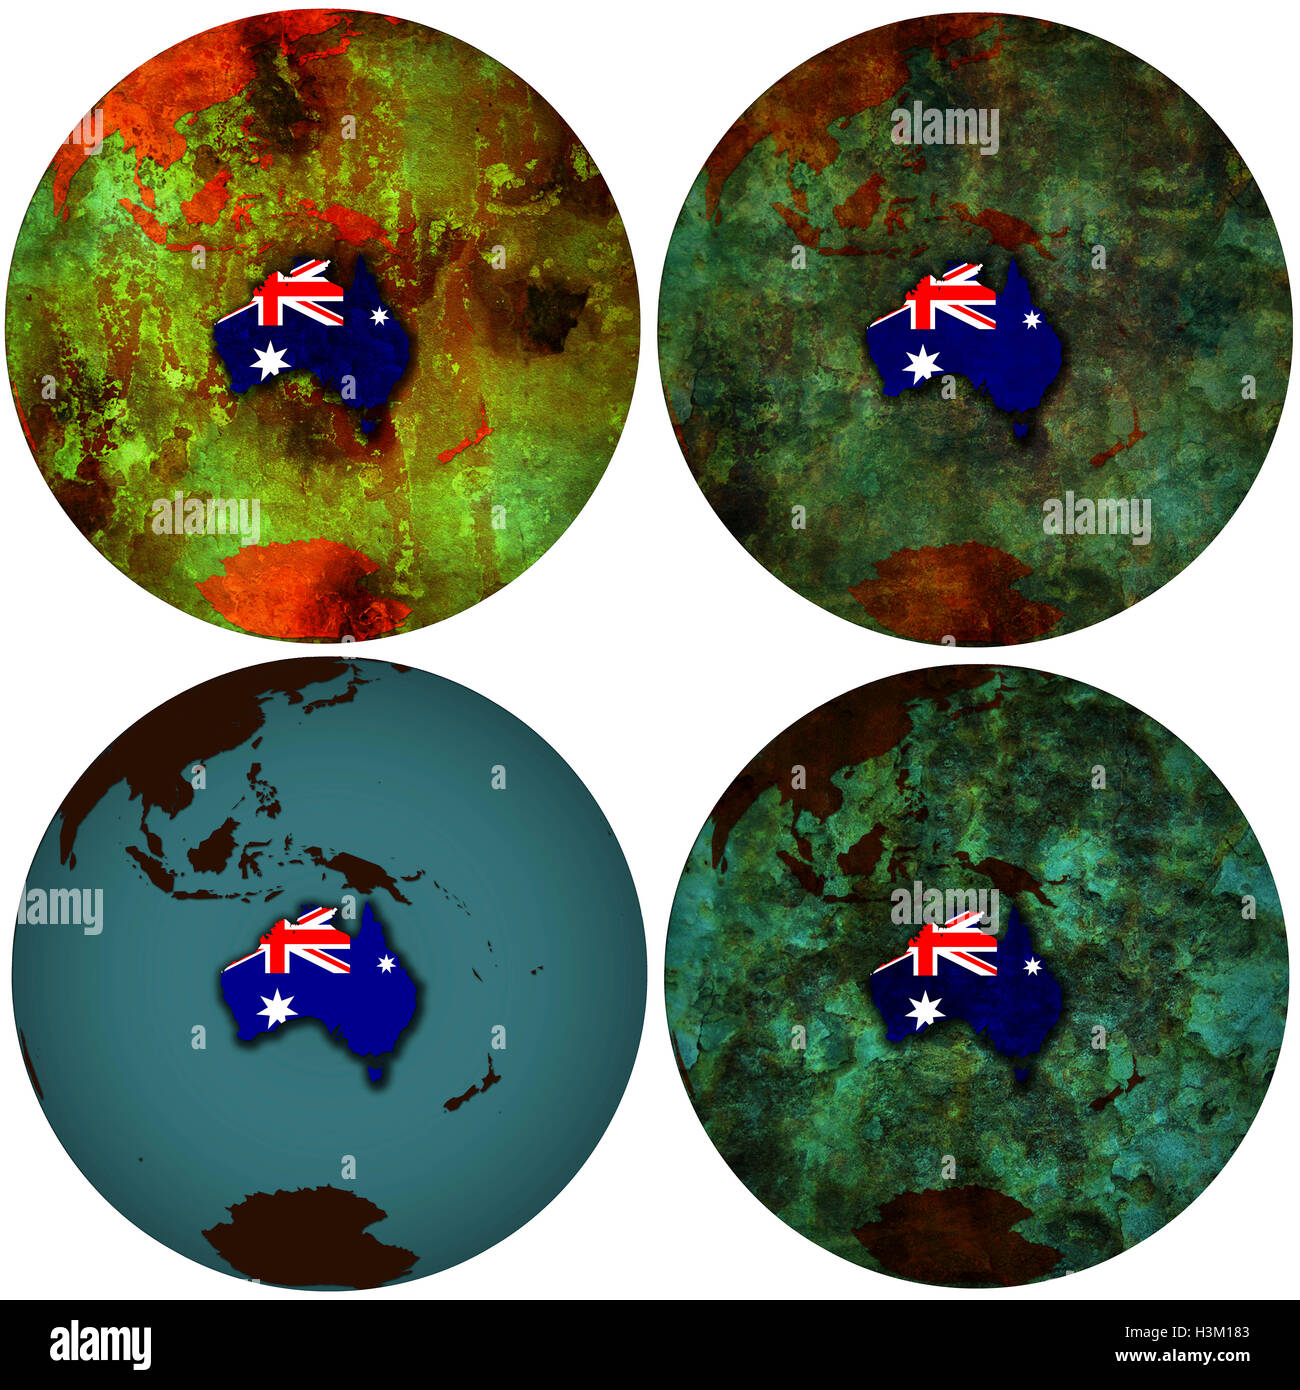 Vista desde el espacio 3D en el hemisferio sur, con la bandera de Australia Foto de stock